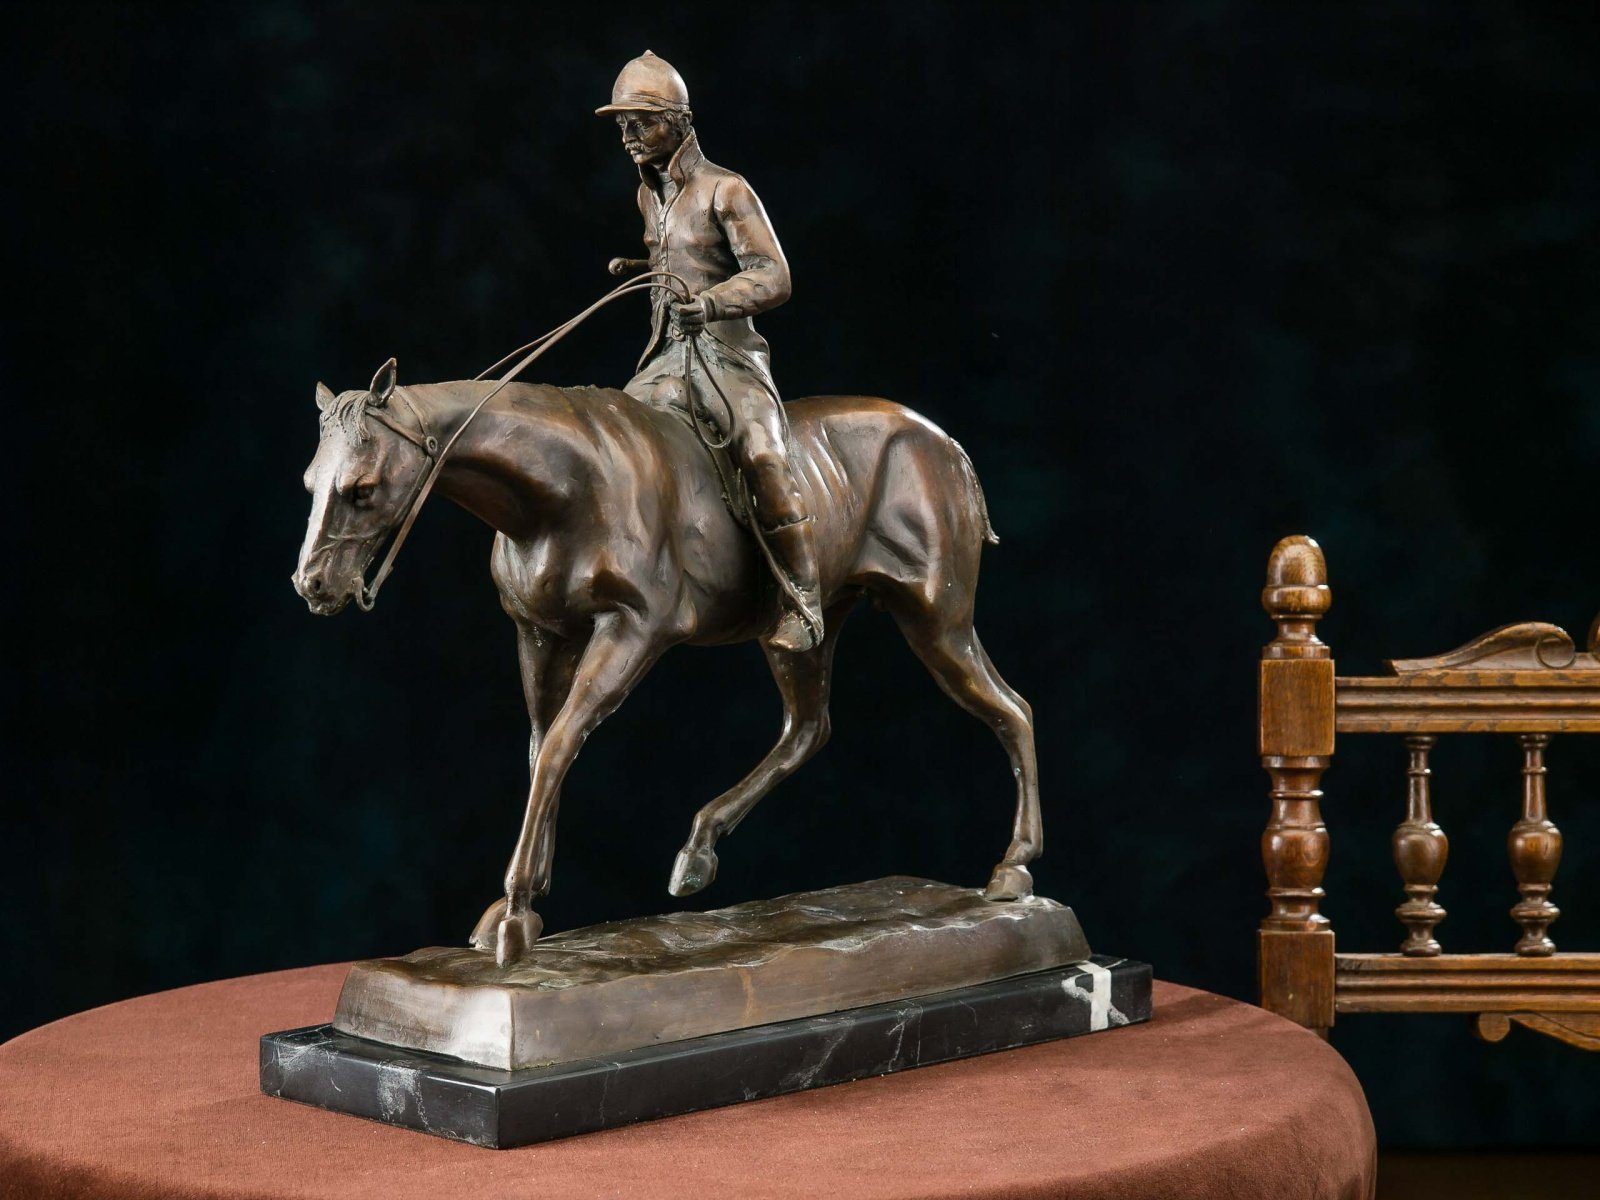 Figur Aubaho Reiter Pferd Bronze 9,4 Bronze Skulptur Skulptur kg Bronzeskulptur Jockey